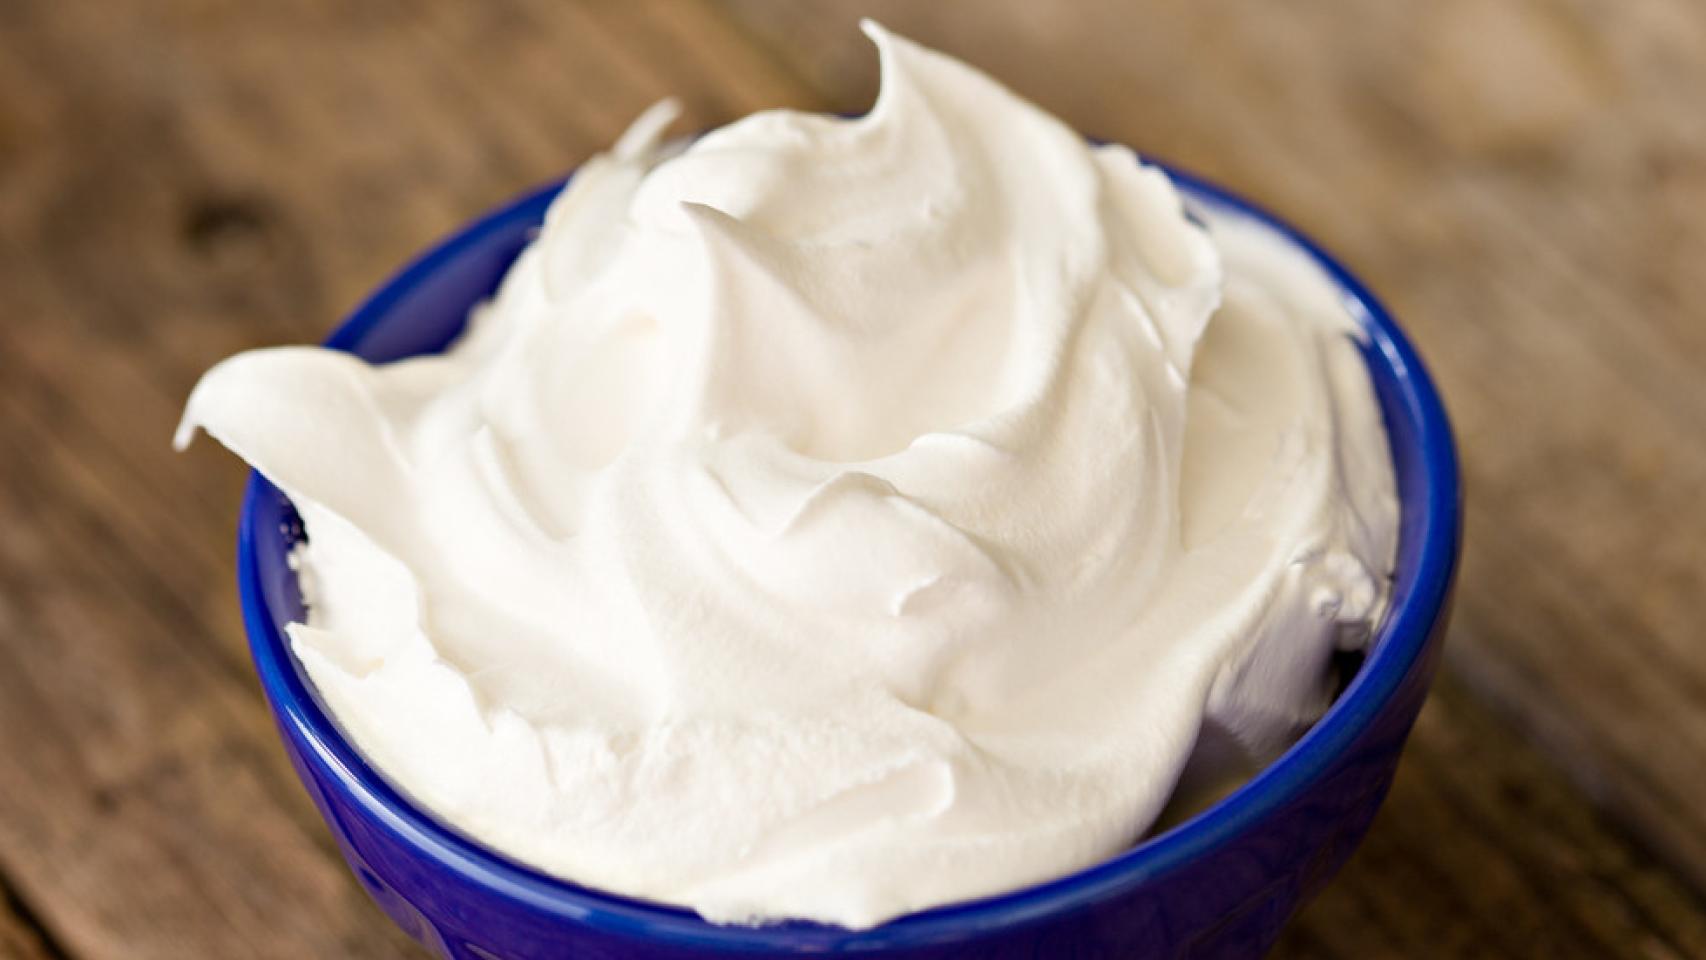 Crema de leche casera: cómo prepararla perfecta en casa